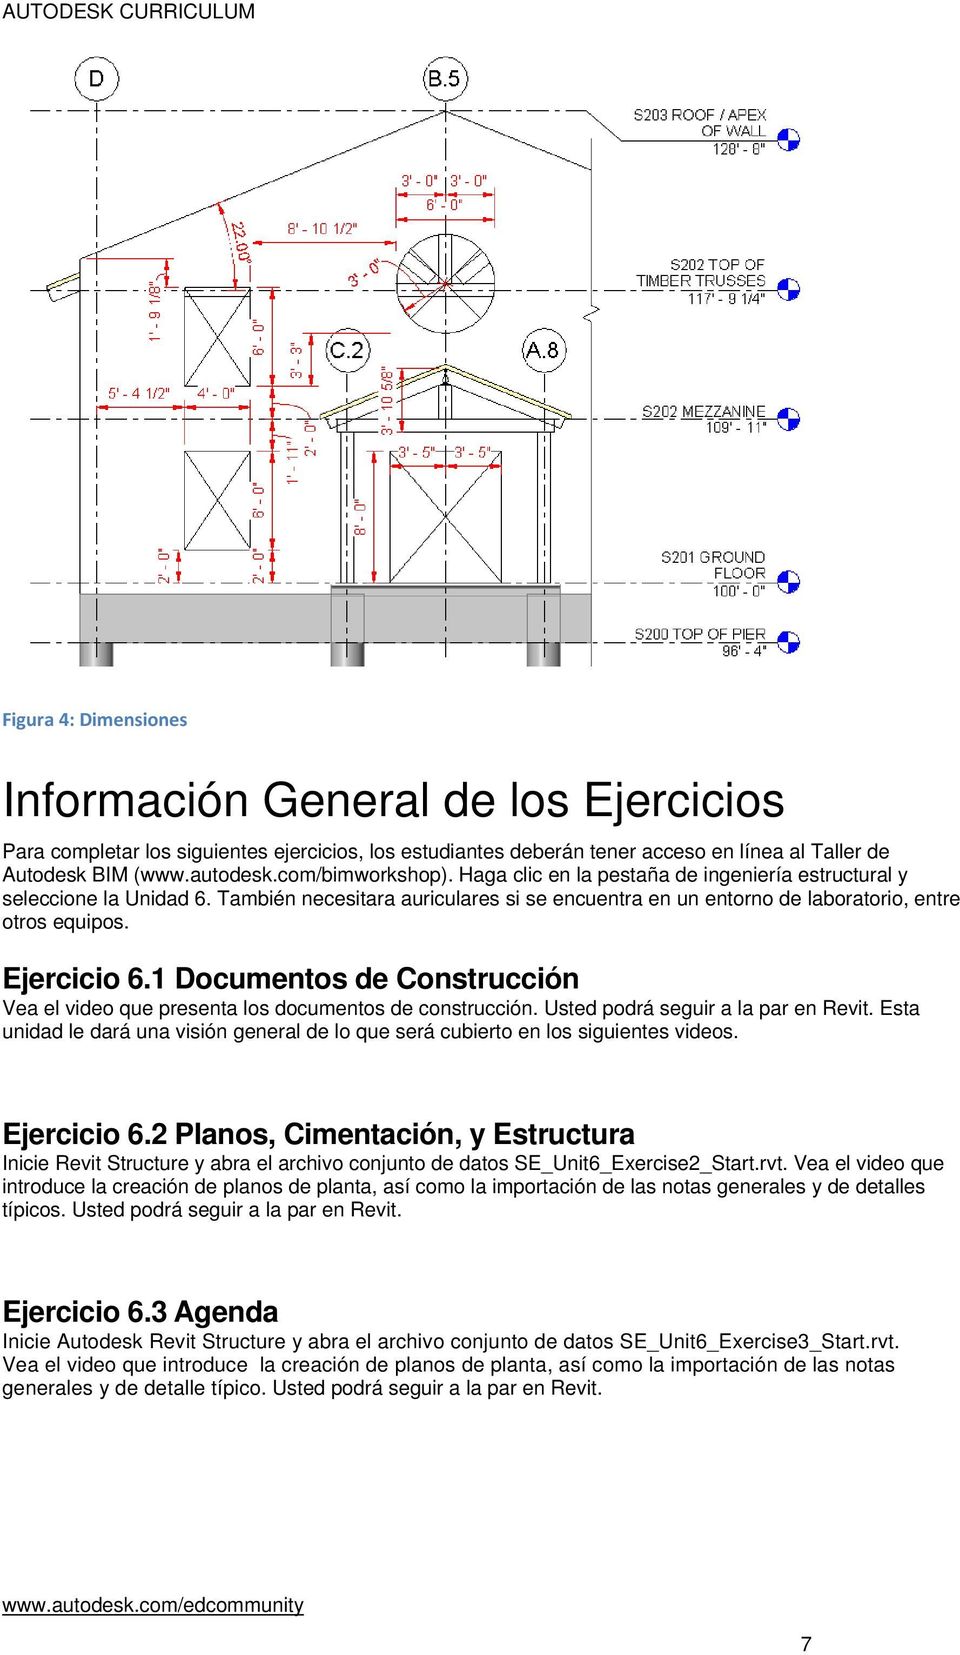 Ejercicio 6.1 Documentos de Construcción Vea el video que presenta los documentos de construcción. Usted podrá seguir a la par en Revit.